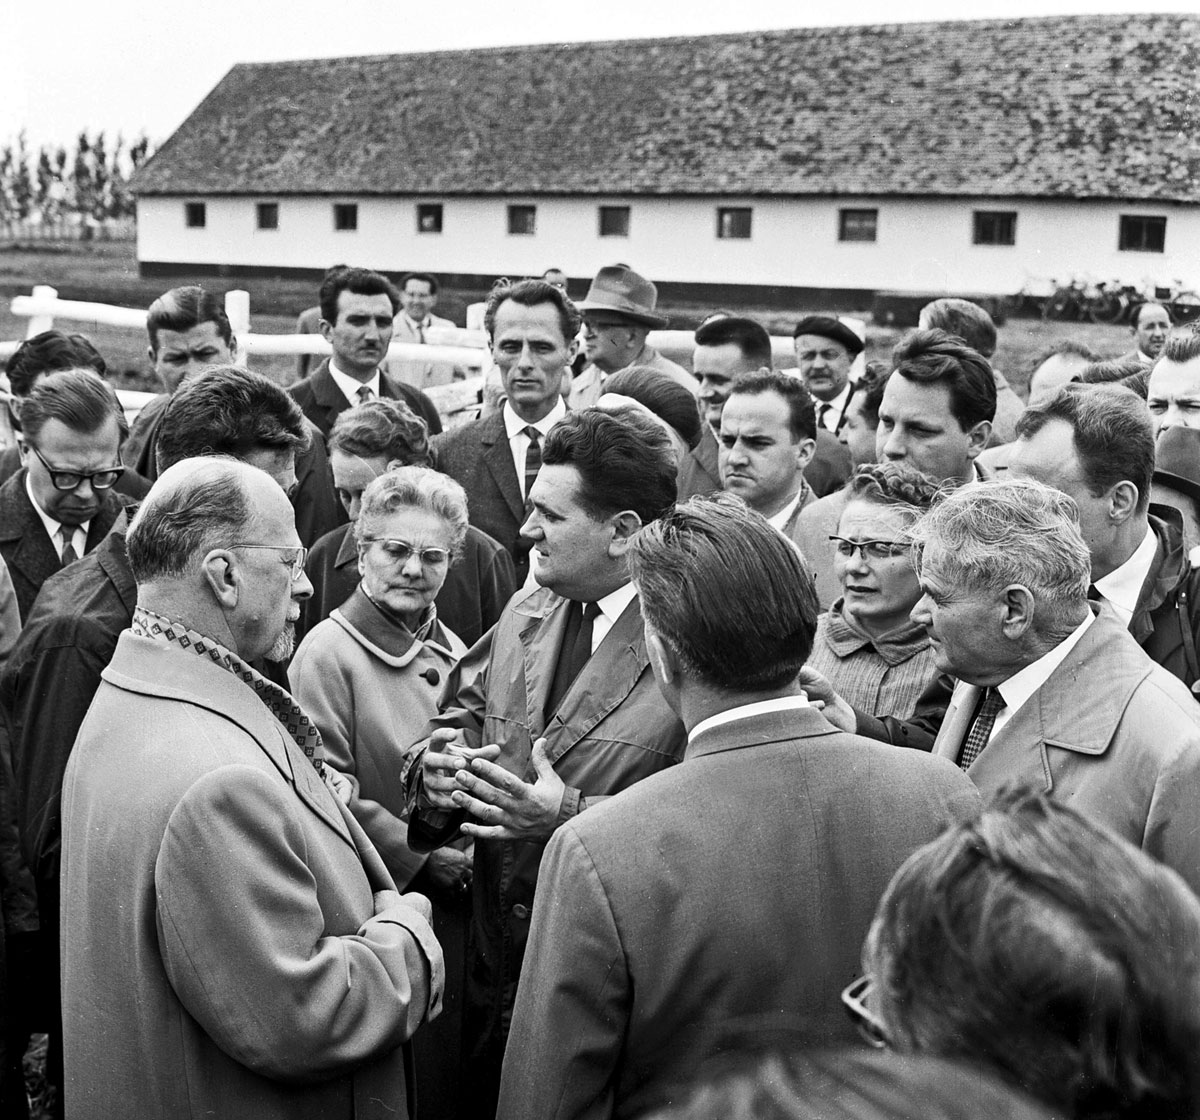 Walter Ulbricht, keletnémet államfő és pártvezető (baloldalt) beszélget Szabó István tsz-elnökkel (középen) és Dobi István magyar állam fővel (jobboldalt) 1964. május 5-én